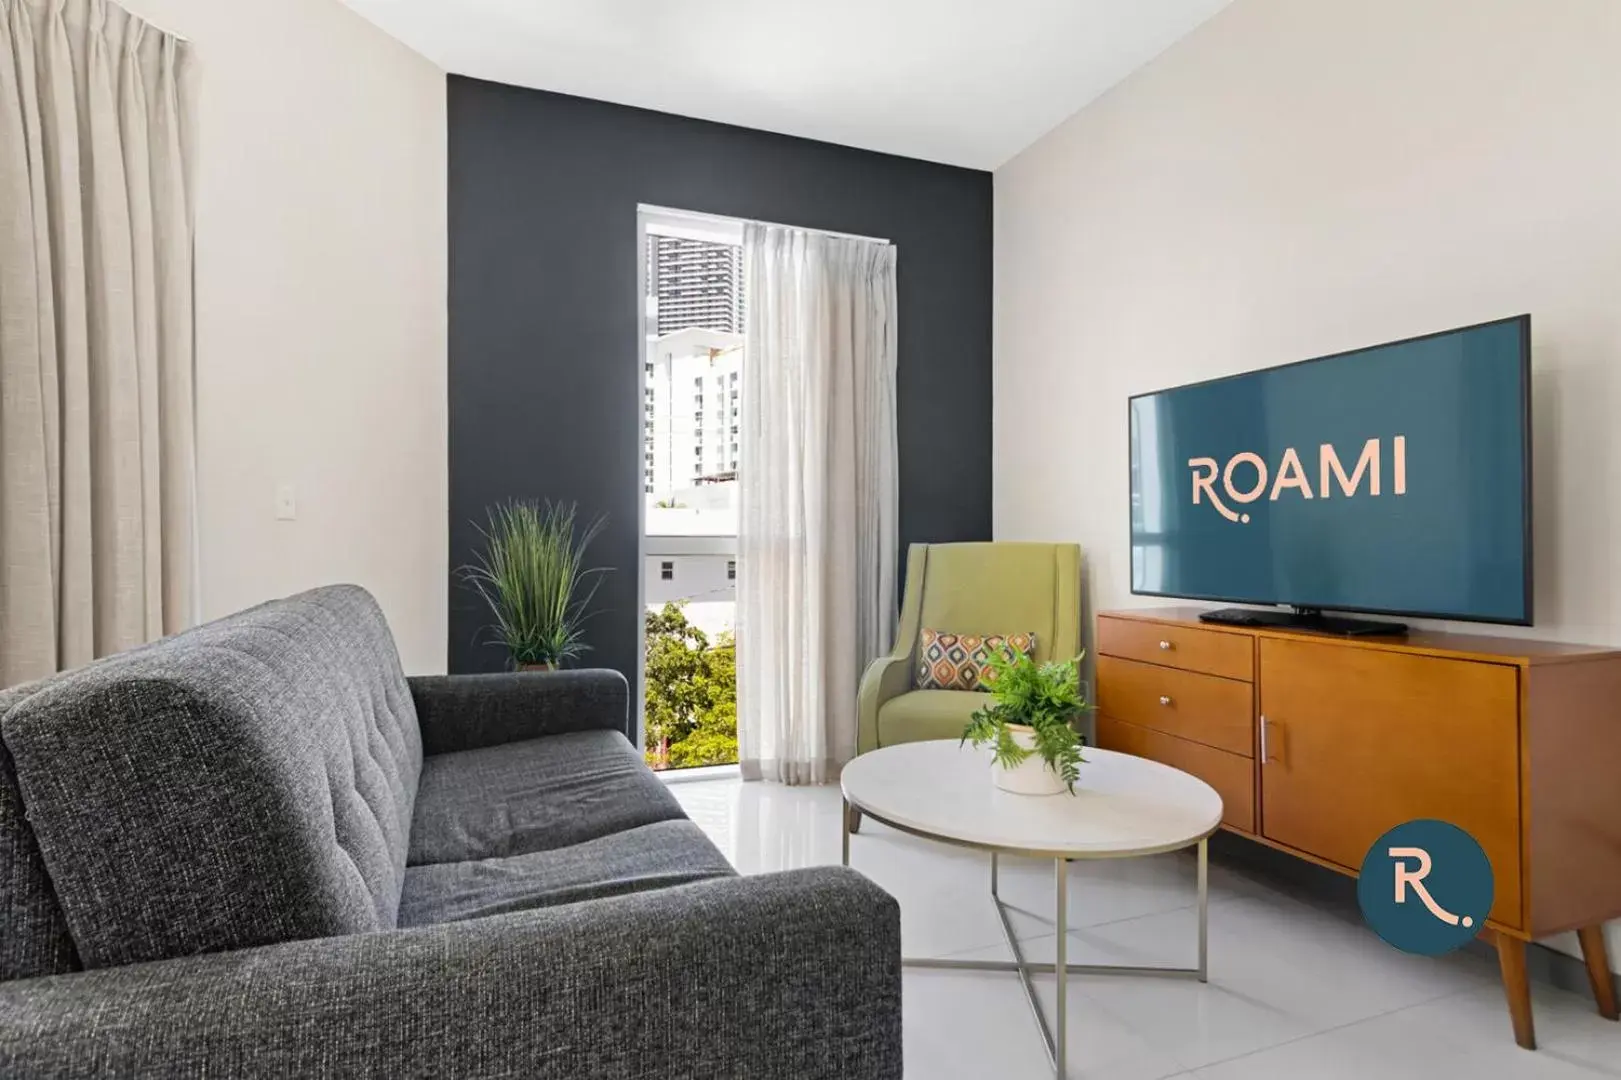 One Bedroom with Balcony Apartment in Roami at Habitat Brickell